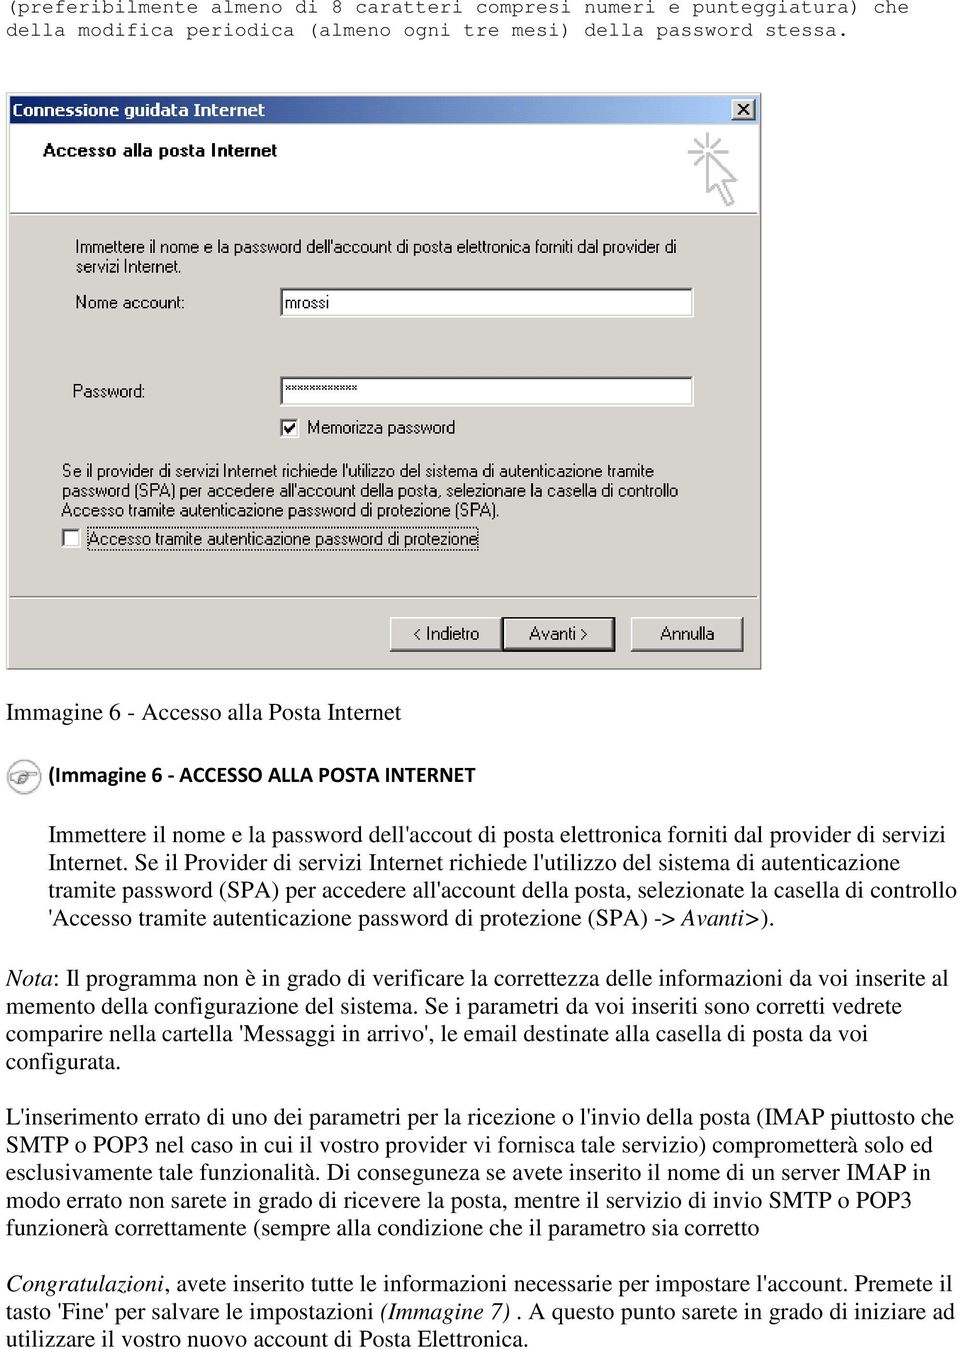 Se il Provider di servizi Internet richiede l'utilizzo del sistema di autenticazione tramite password (SPA) per accedere all'account della posta, selezionate la casella di controllo 'Accesso tramite